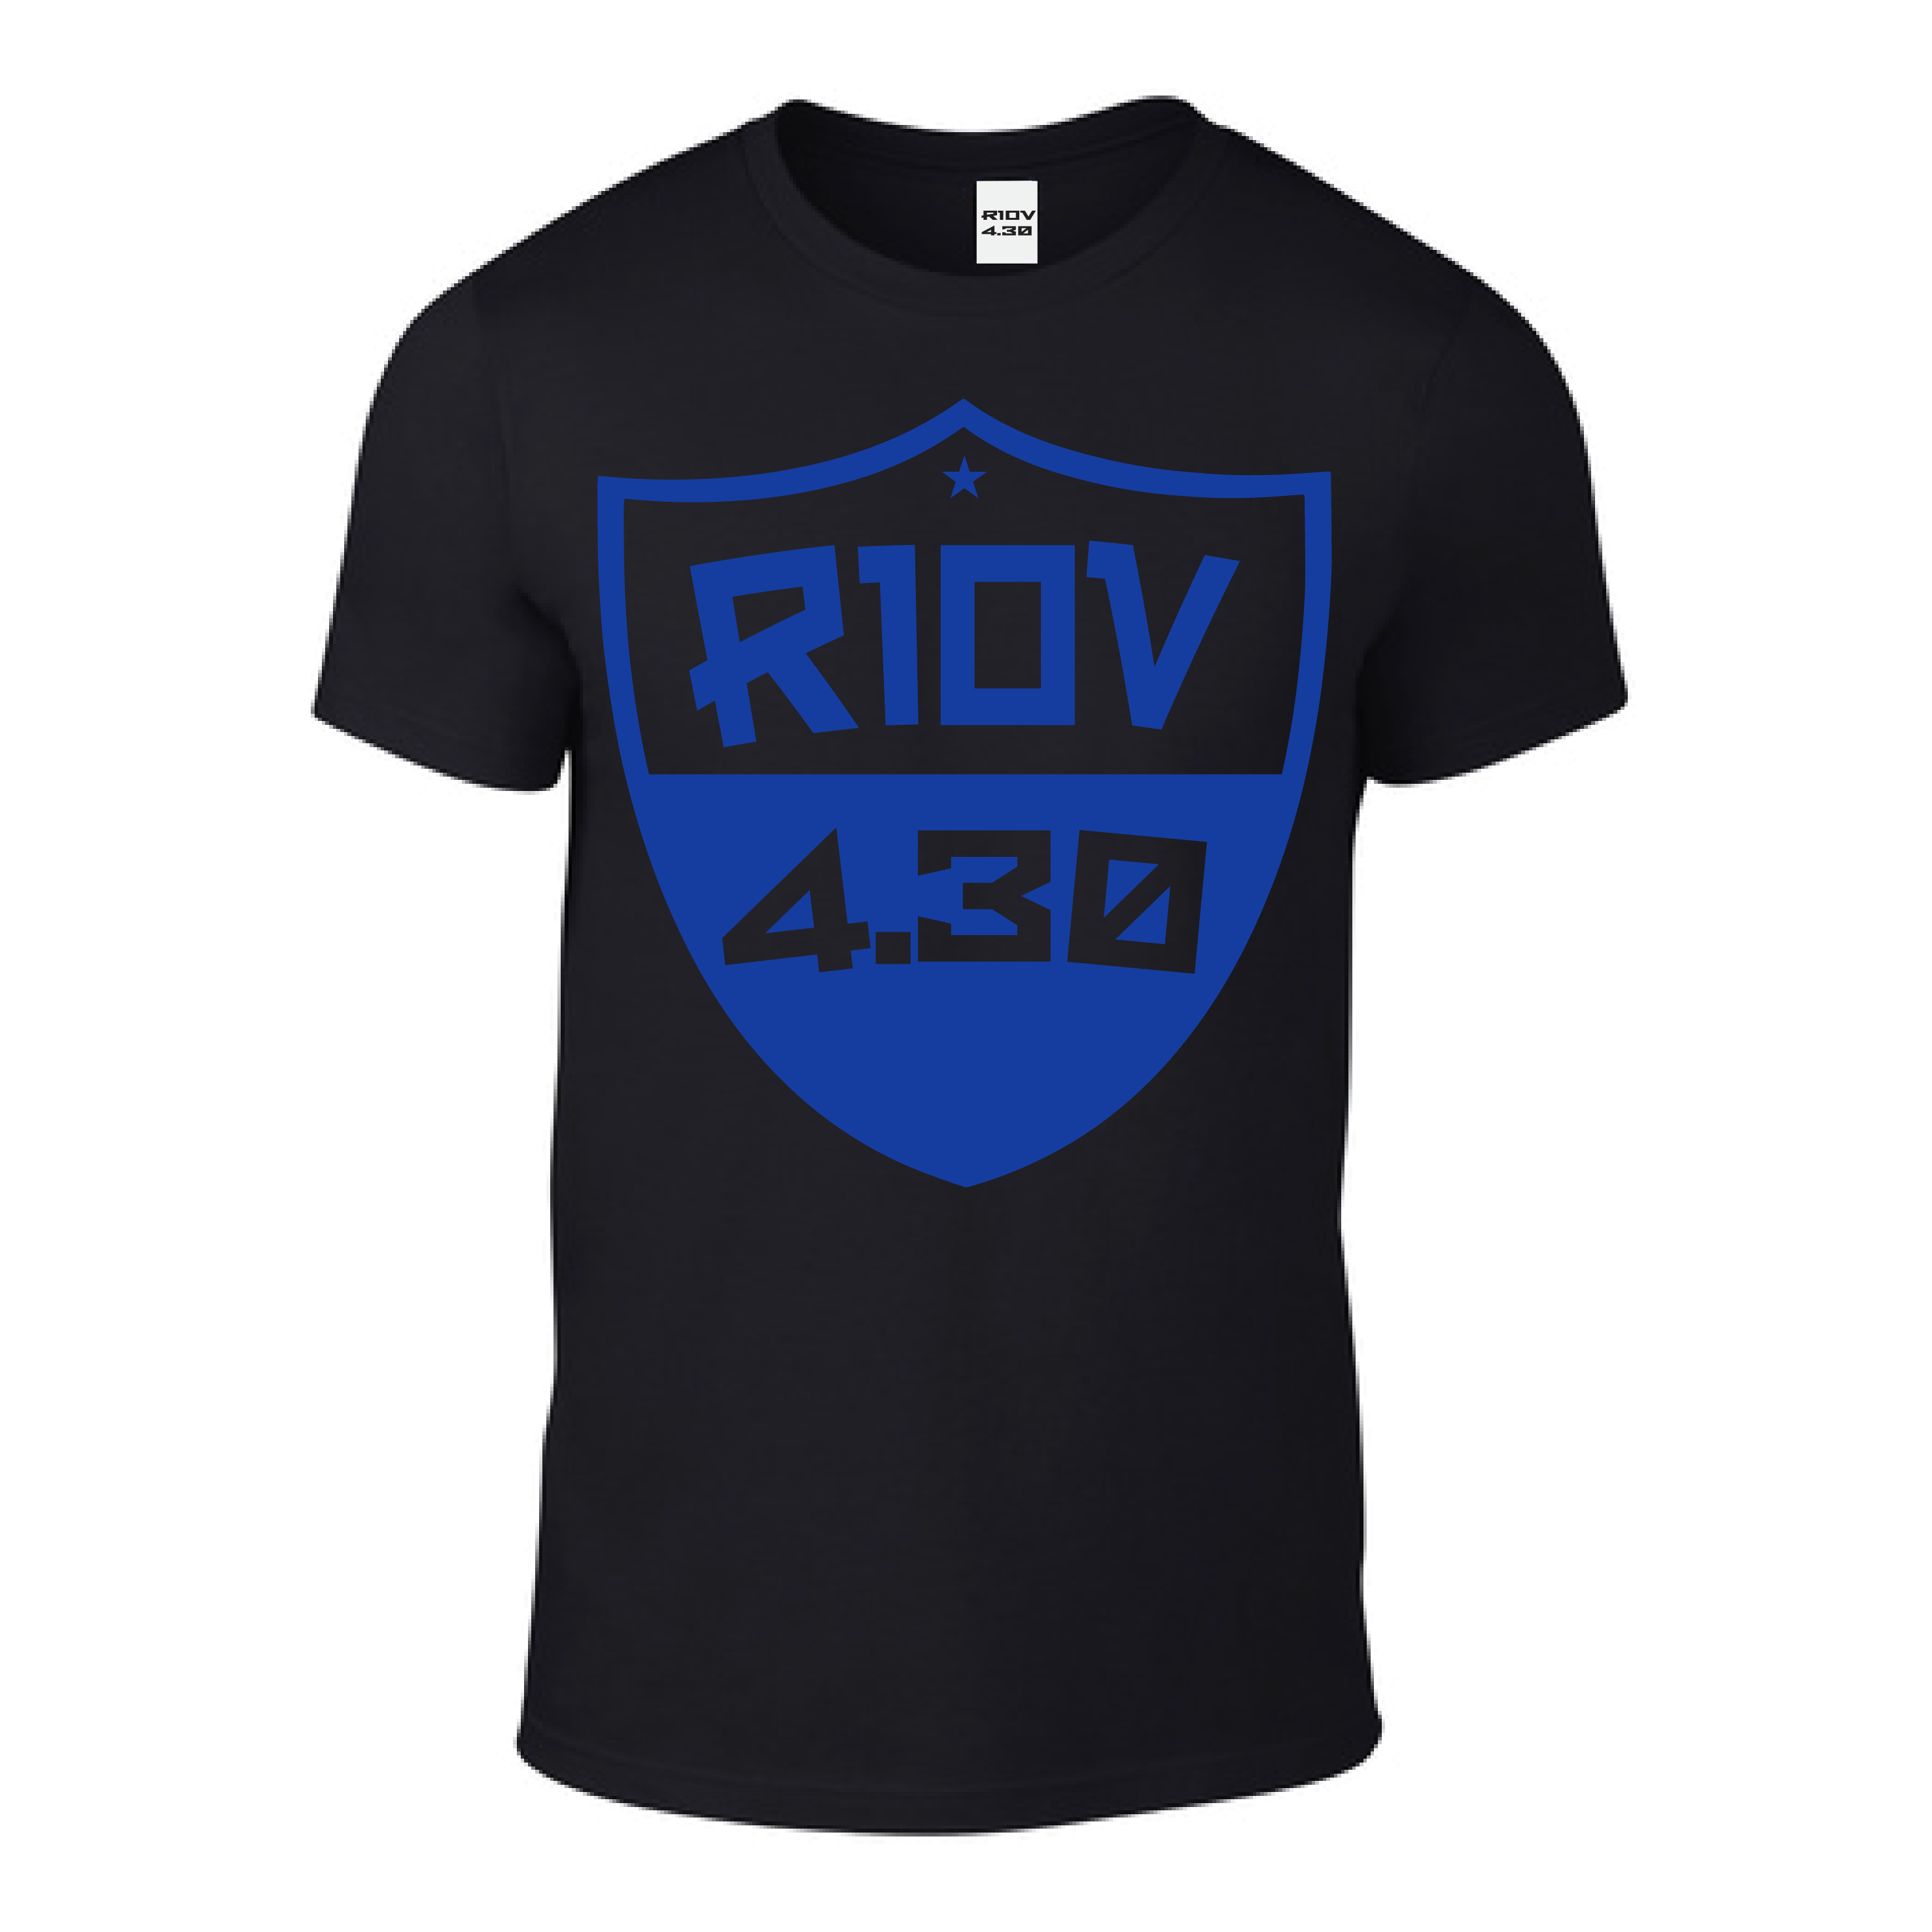 Riov 4.30 Soft Blue